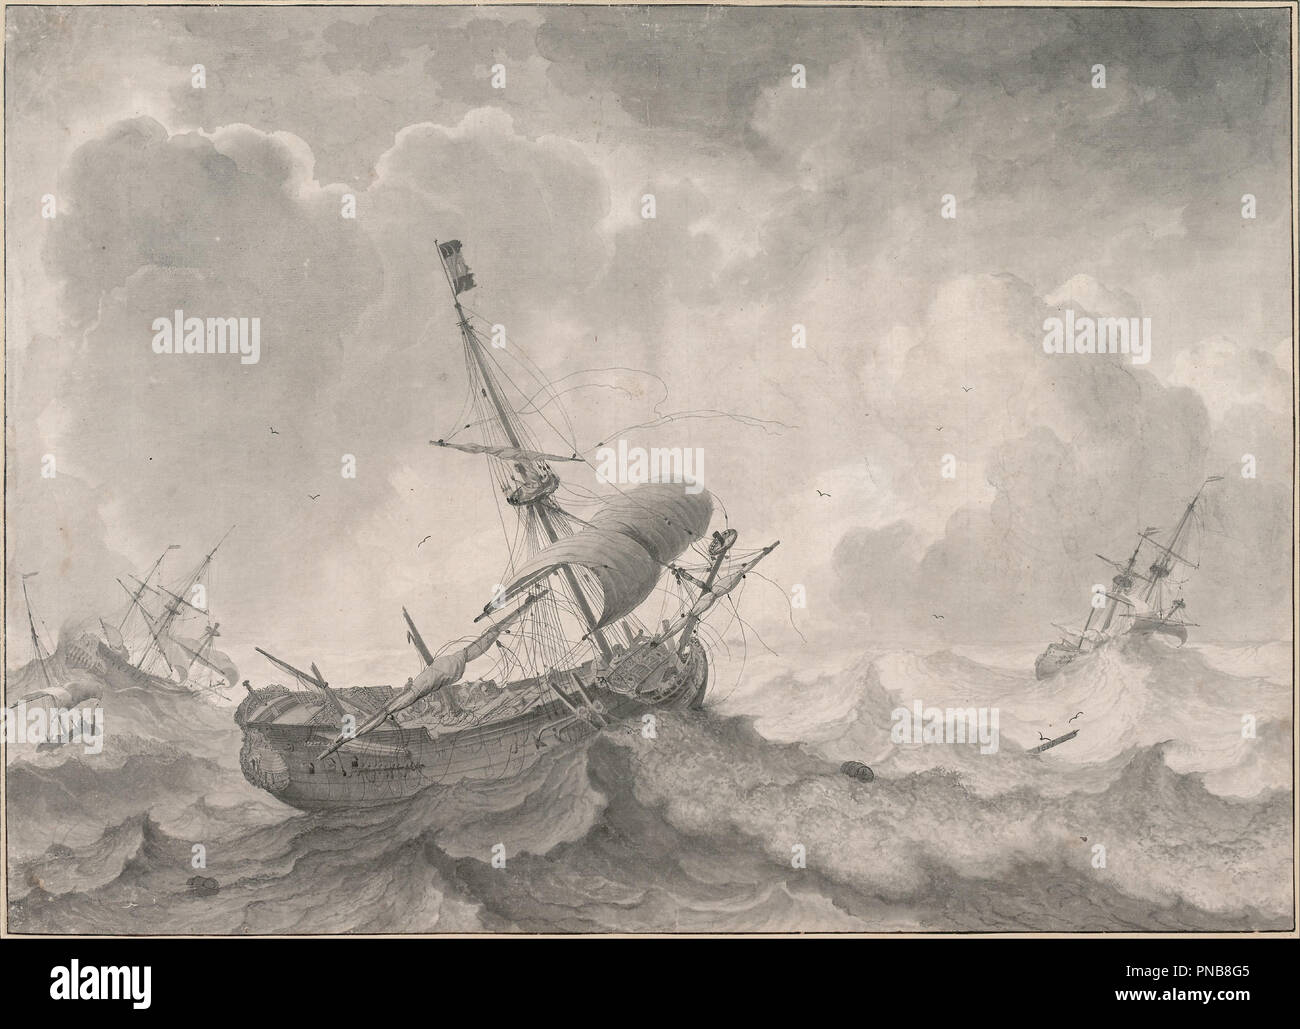 Los barcos en un mar tempestuoso, 1698. Fecha/período: 1698. Pincel y tinta gris, lavado. Autor: Ludolf Bakhuizen. Ludolf Backhuysen. Foto de stock